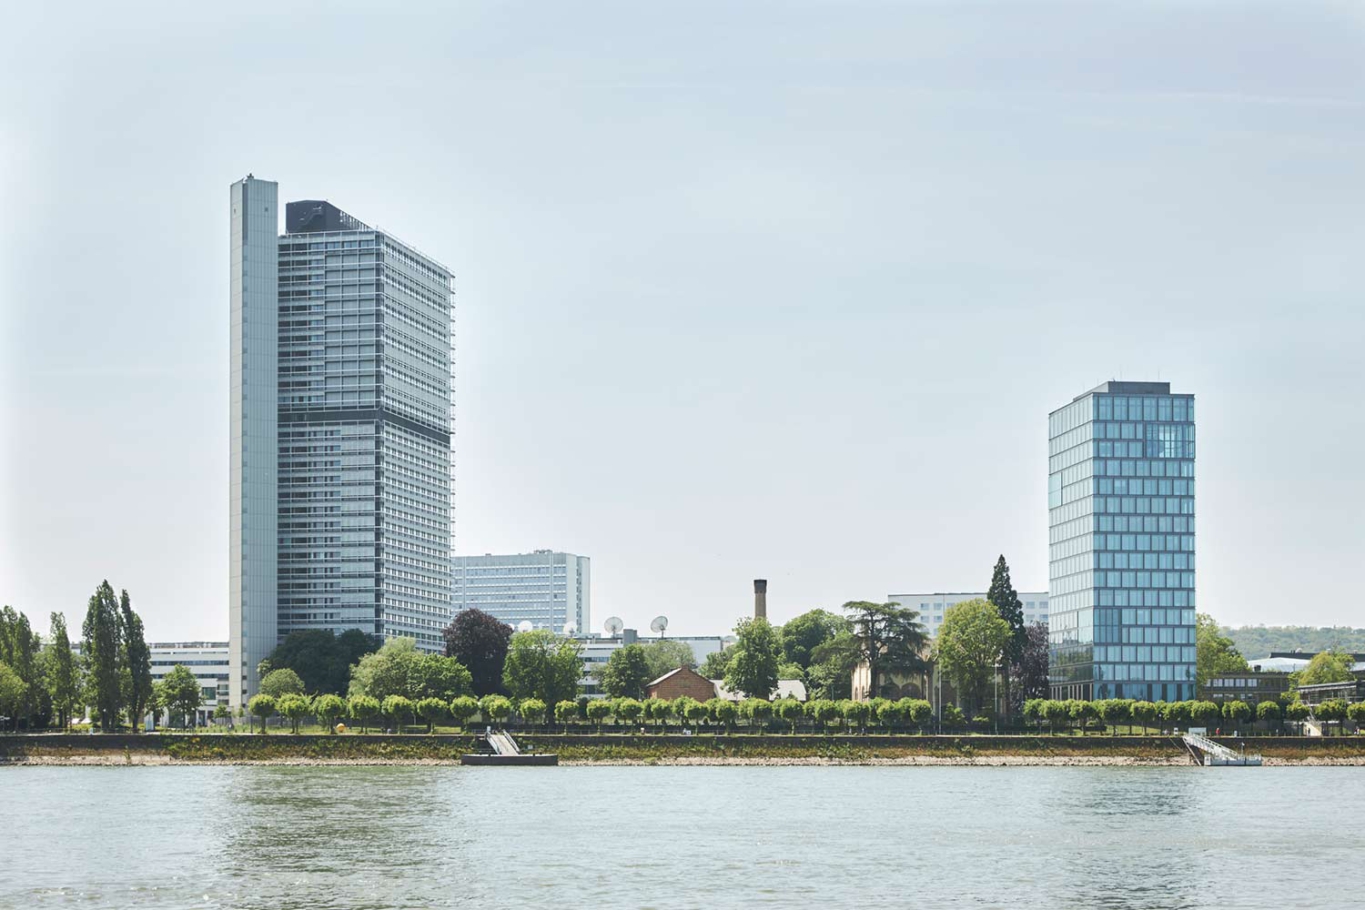 Lioba Schneider Architekturfotografie: Neubau des Climate Towers in Bonn: Das Hochhaus aus Glas direkt am Rhein schimmert grün-blau.